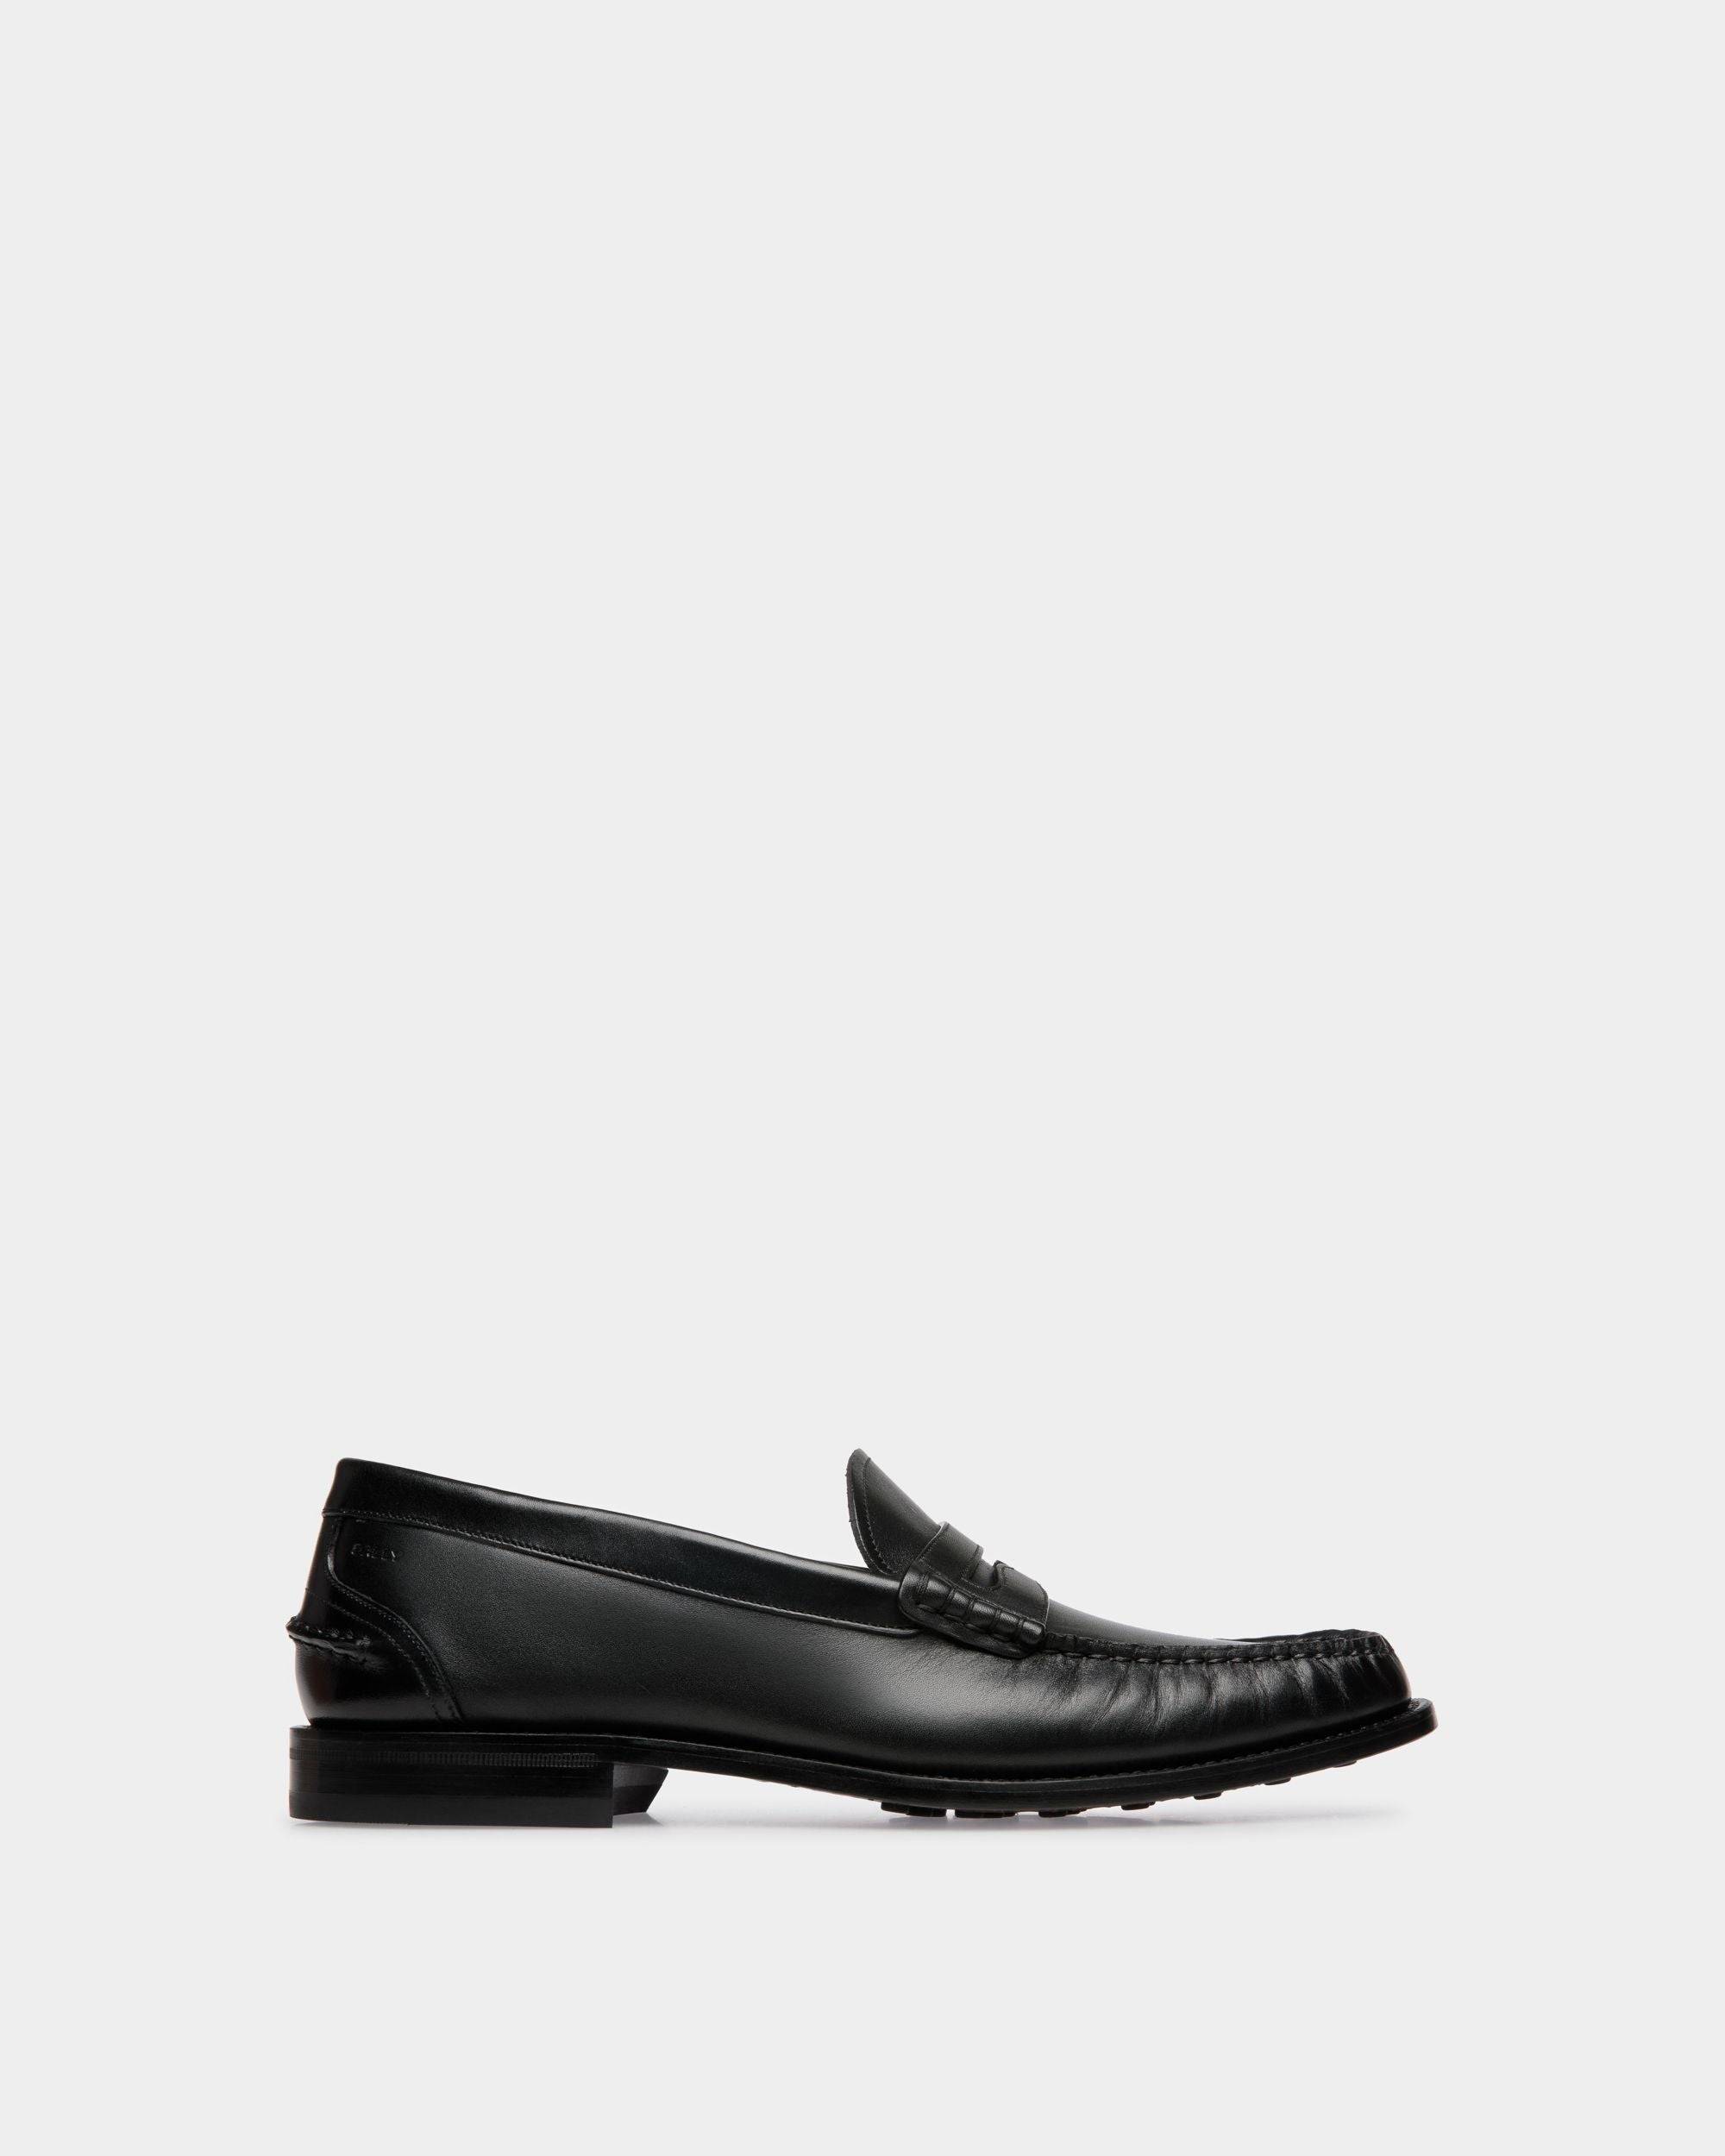 Men's Oregon Loafer in Black Leather | Bally | Still Life Side